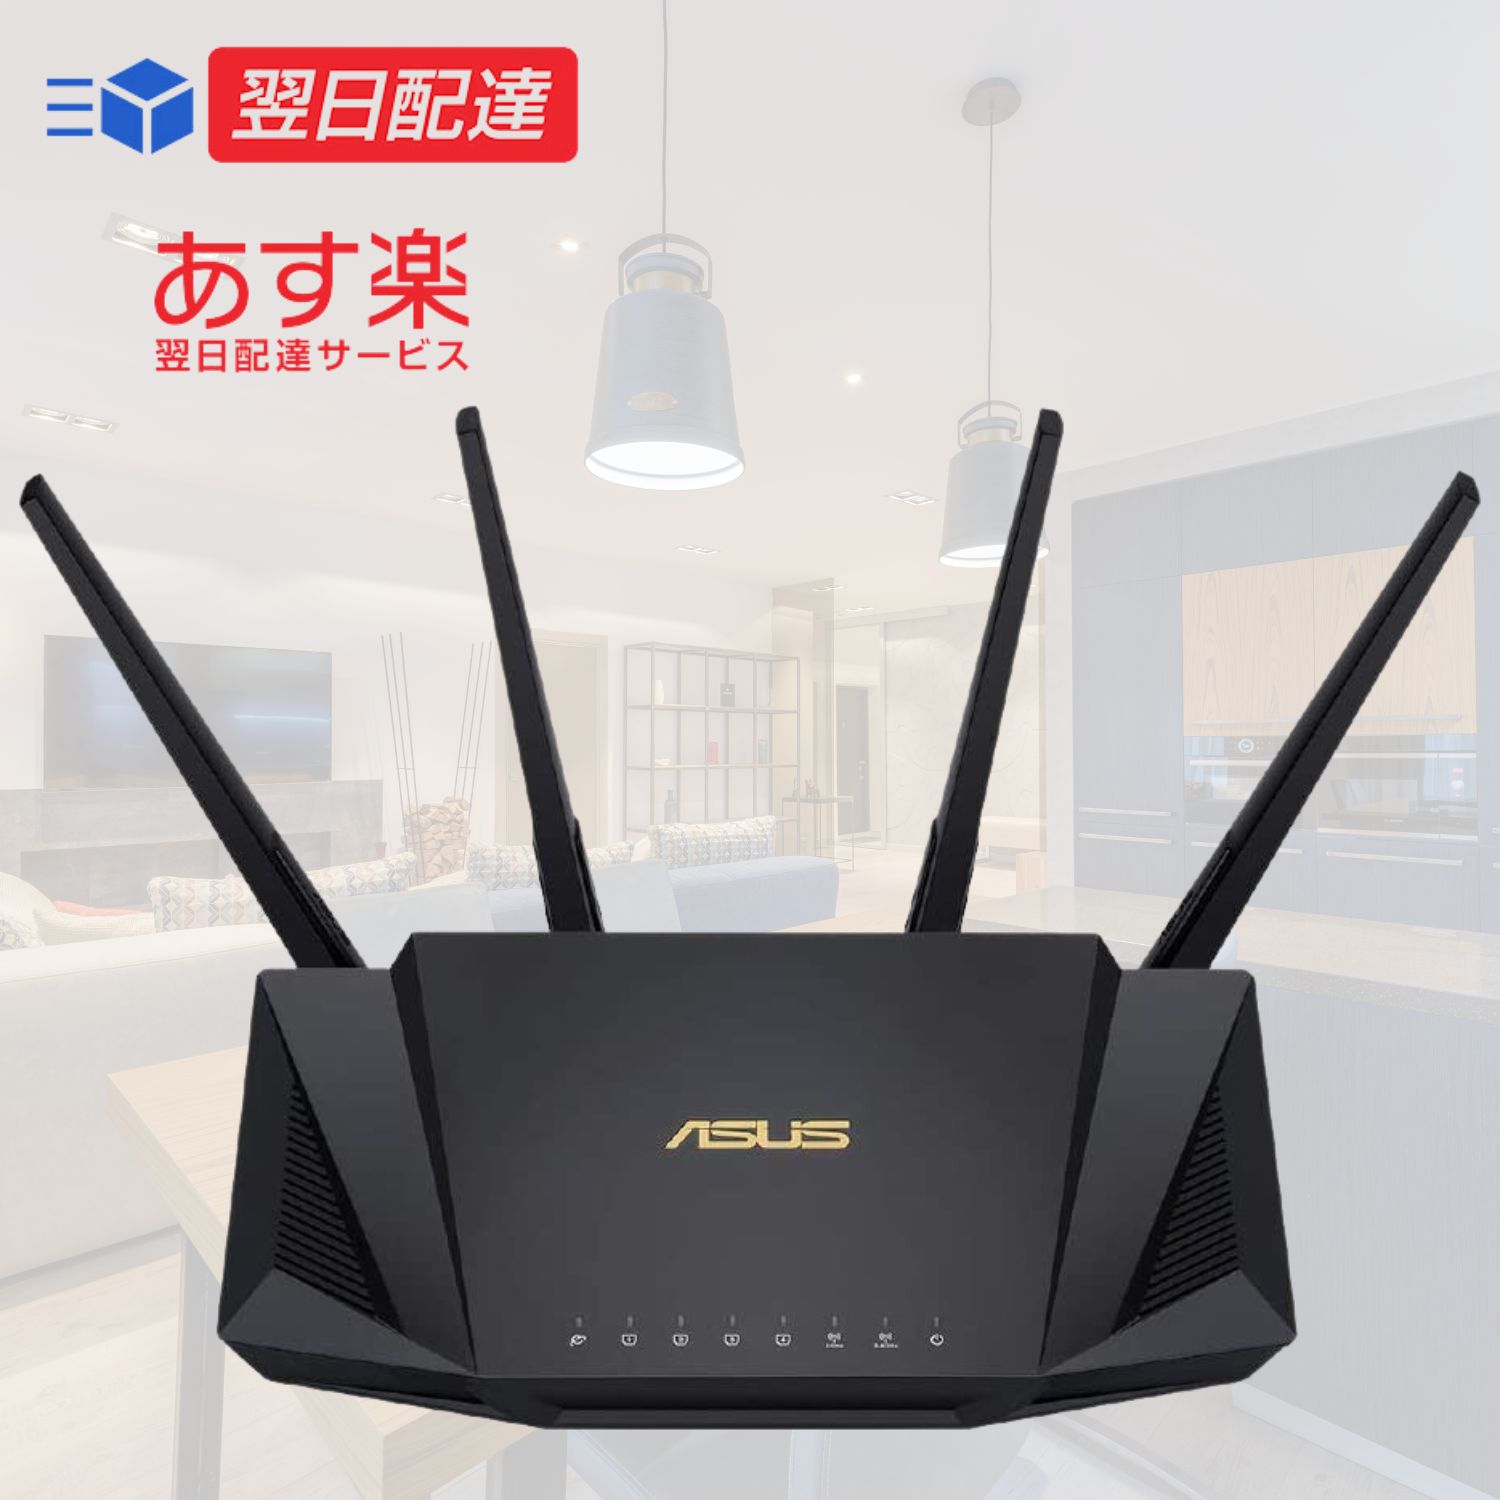  ルーター 無線 ASUS WiFi WiFi6 2402+574Mbps v6プラス対応デュアルバンド RT-AX3000 V2 Broadcom クワッドコア CPU 1.7GHzメッシュ機能付 3階建/4LDK